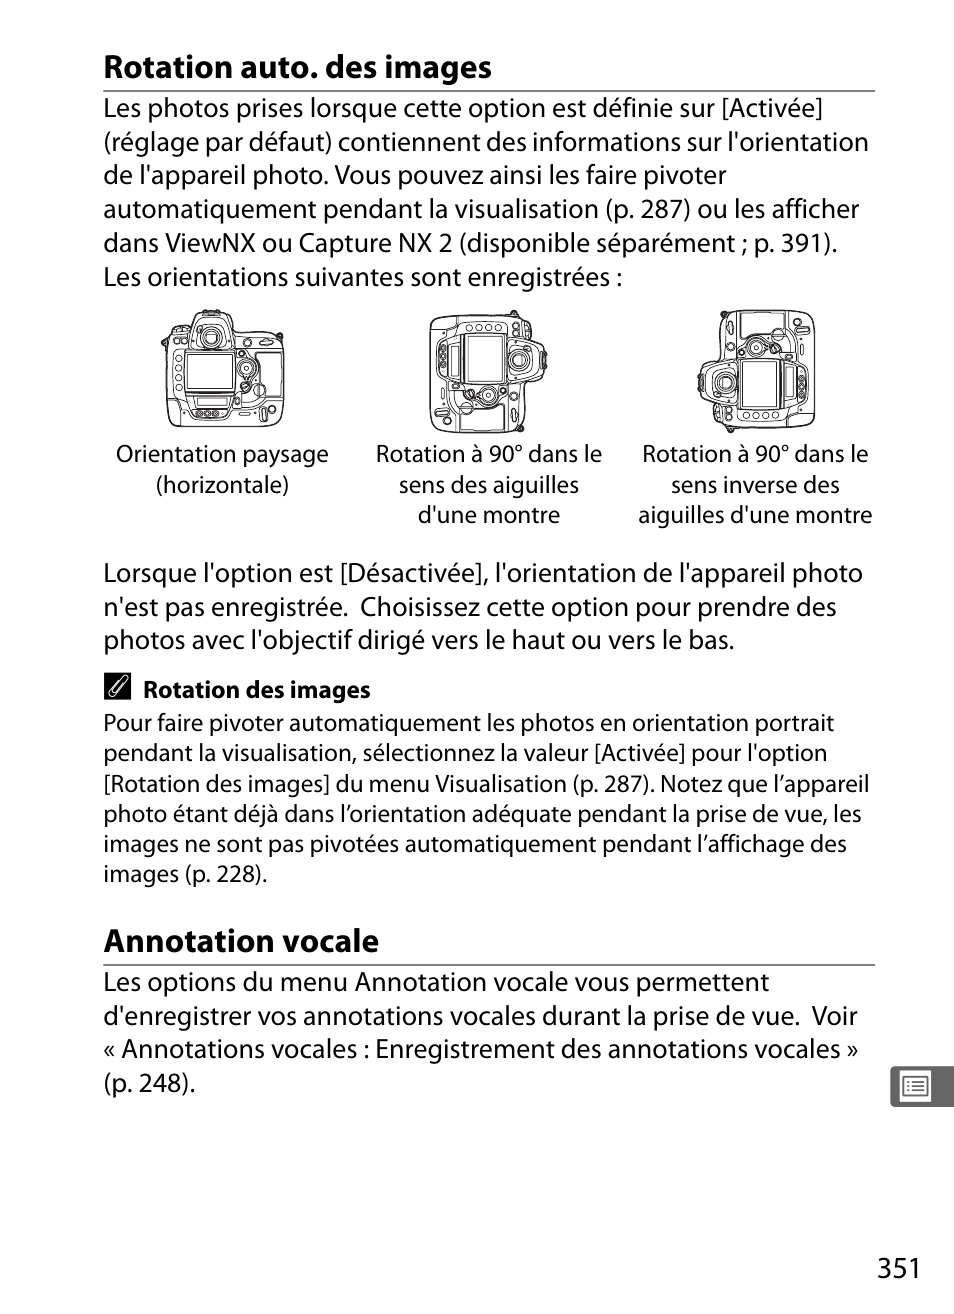 Rotation auto. des images, Annotation vocale | Nikon D3X Manuel d'utilisation | Page 377 / 476